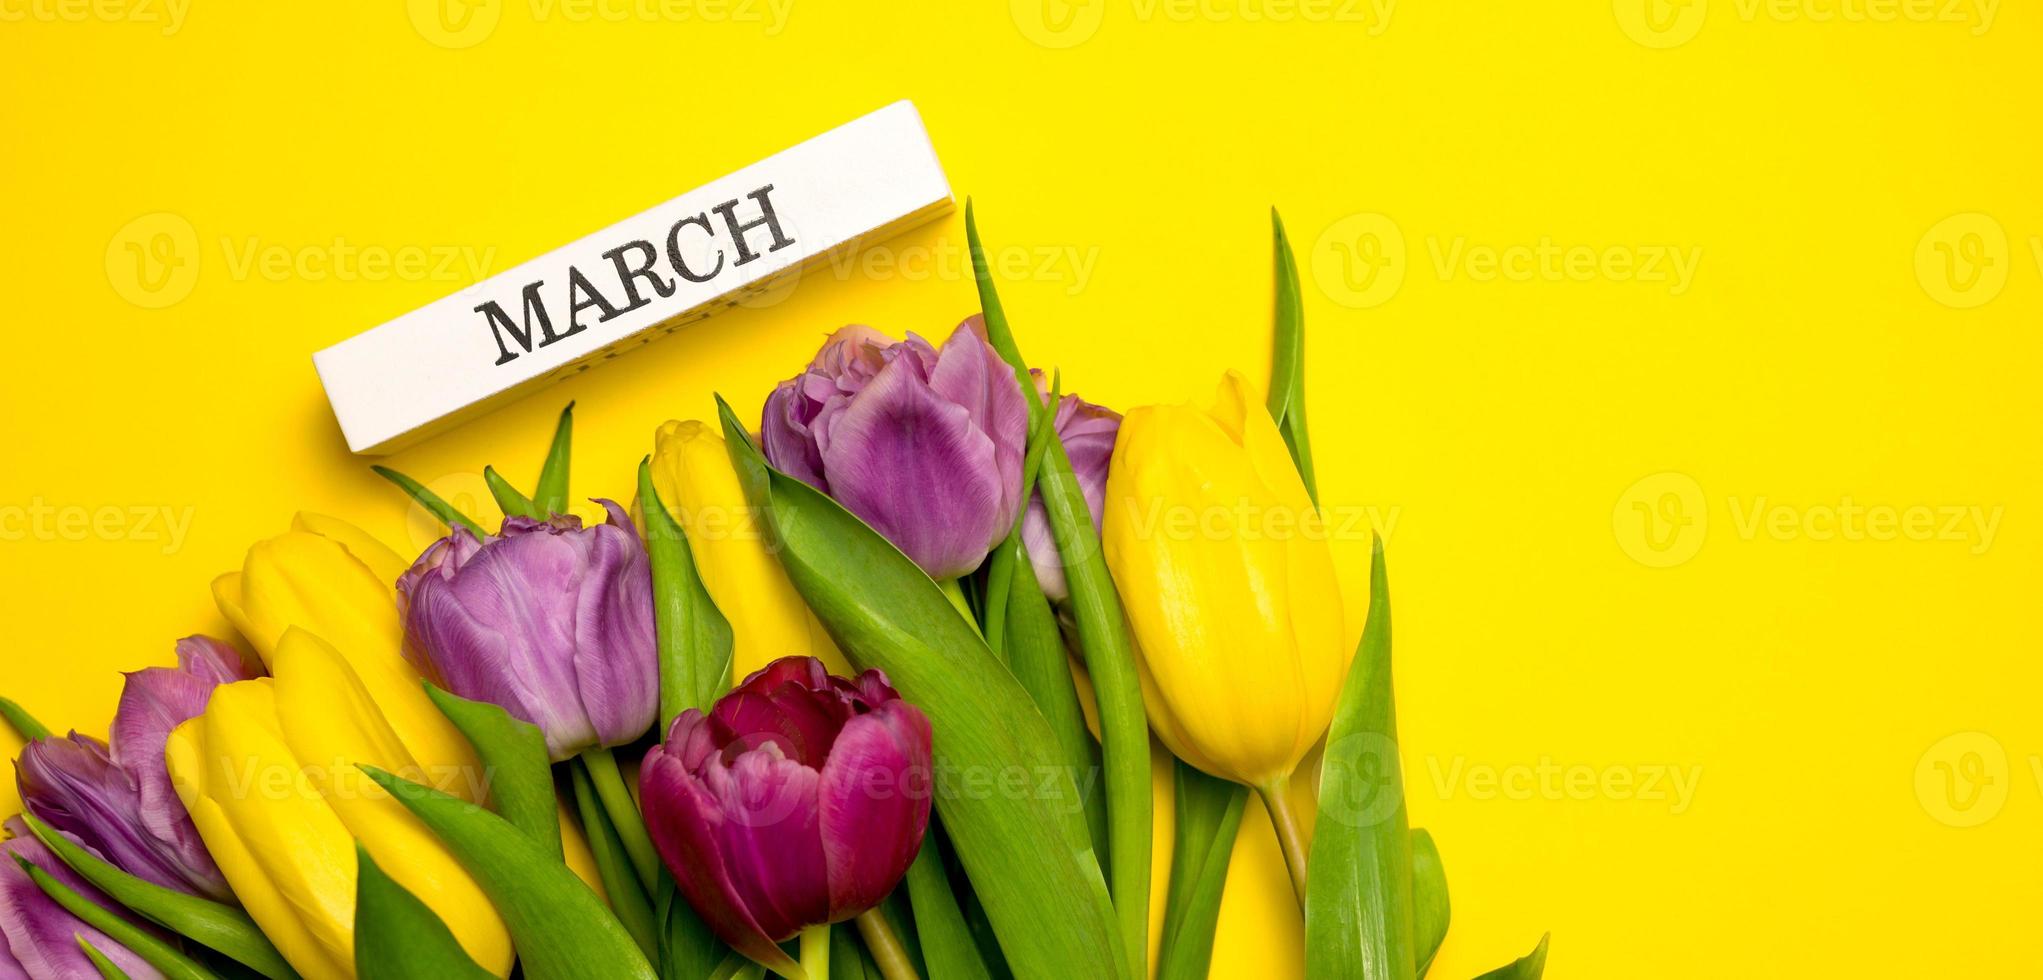 bannière de printemps. un bouquet de tulipes jaunes, roses et violettes et mars écrit sur un bloc de bois. concept de la journée de la femme photo